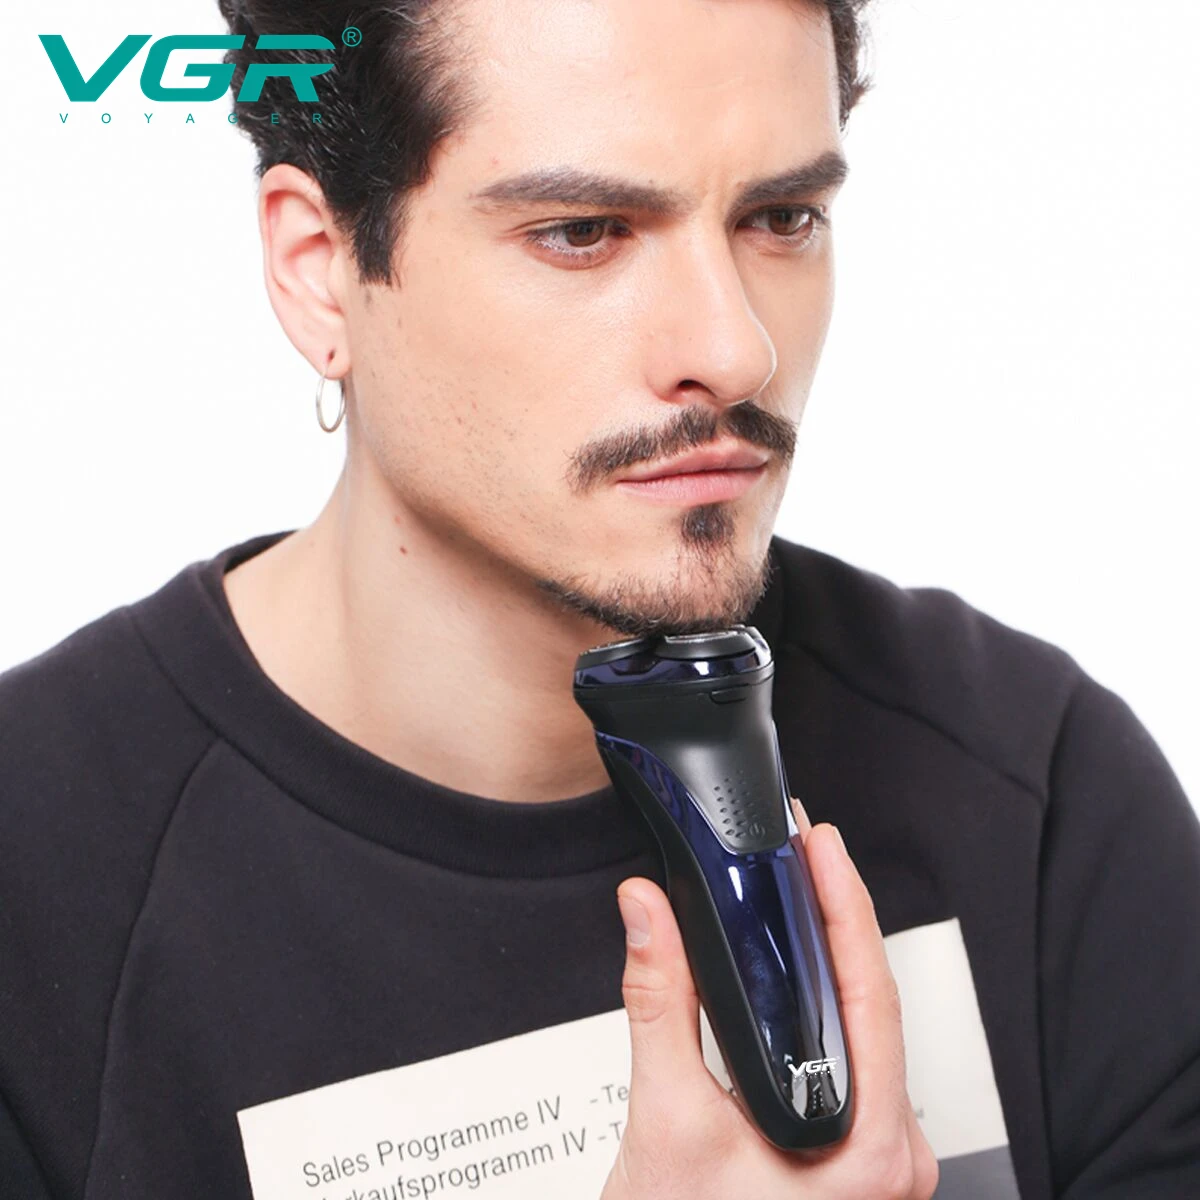 VGR Jilet Profesyonel Tıraş Makinesi Su Geçirmez Sakal Tıraş Makinesi Şarj Edilebilir Akülü Elektrikli Taşınabilir Tıraş Makinesi Erkekler için V-306